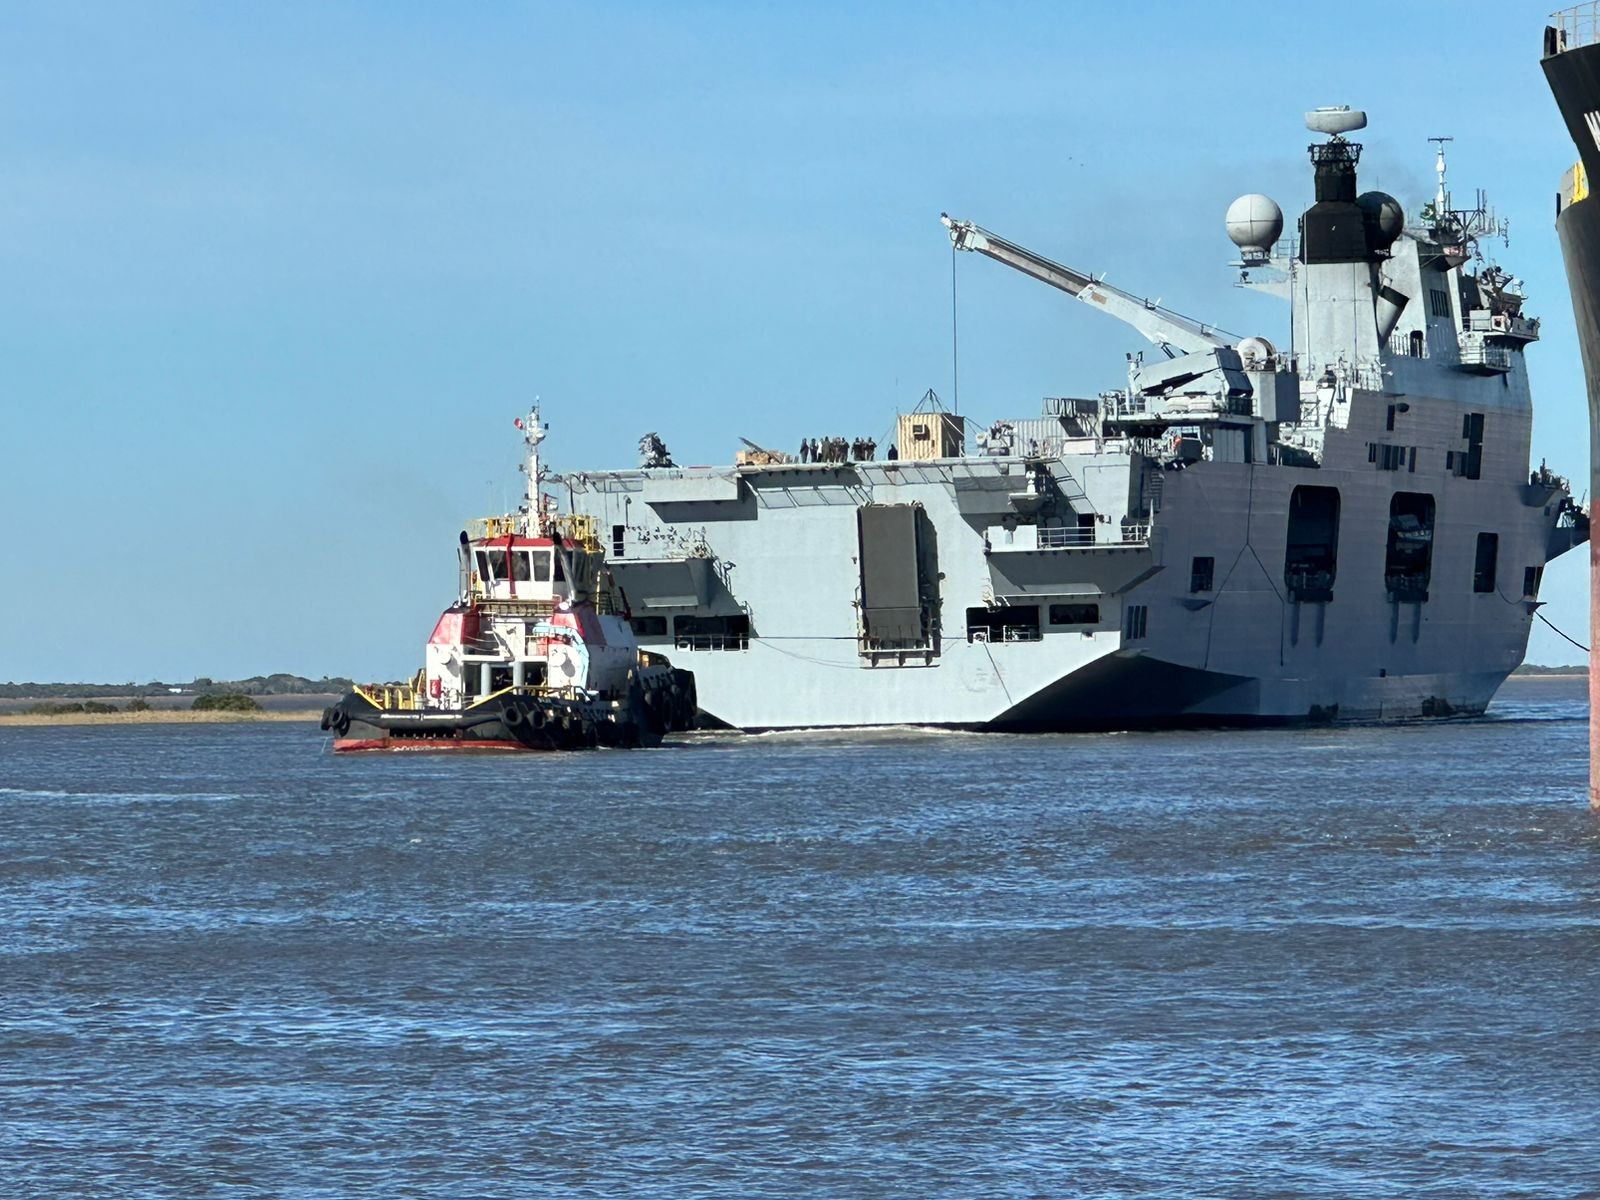 VÍDEO: Maior navio de guerra da América Latina atraca em Rio Grande para ajudar população após enchente